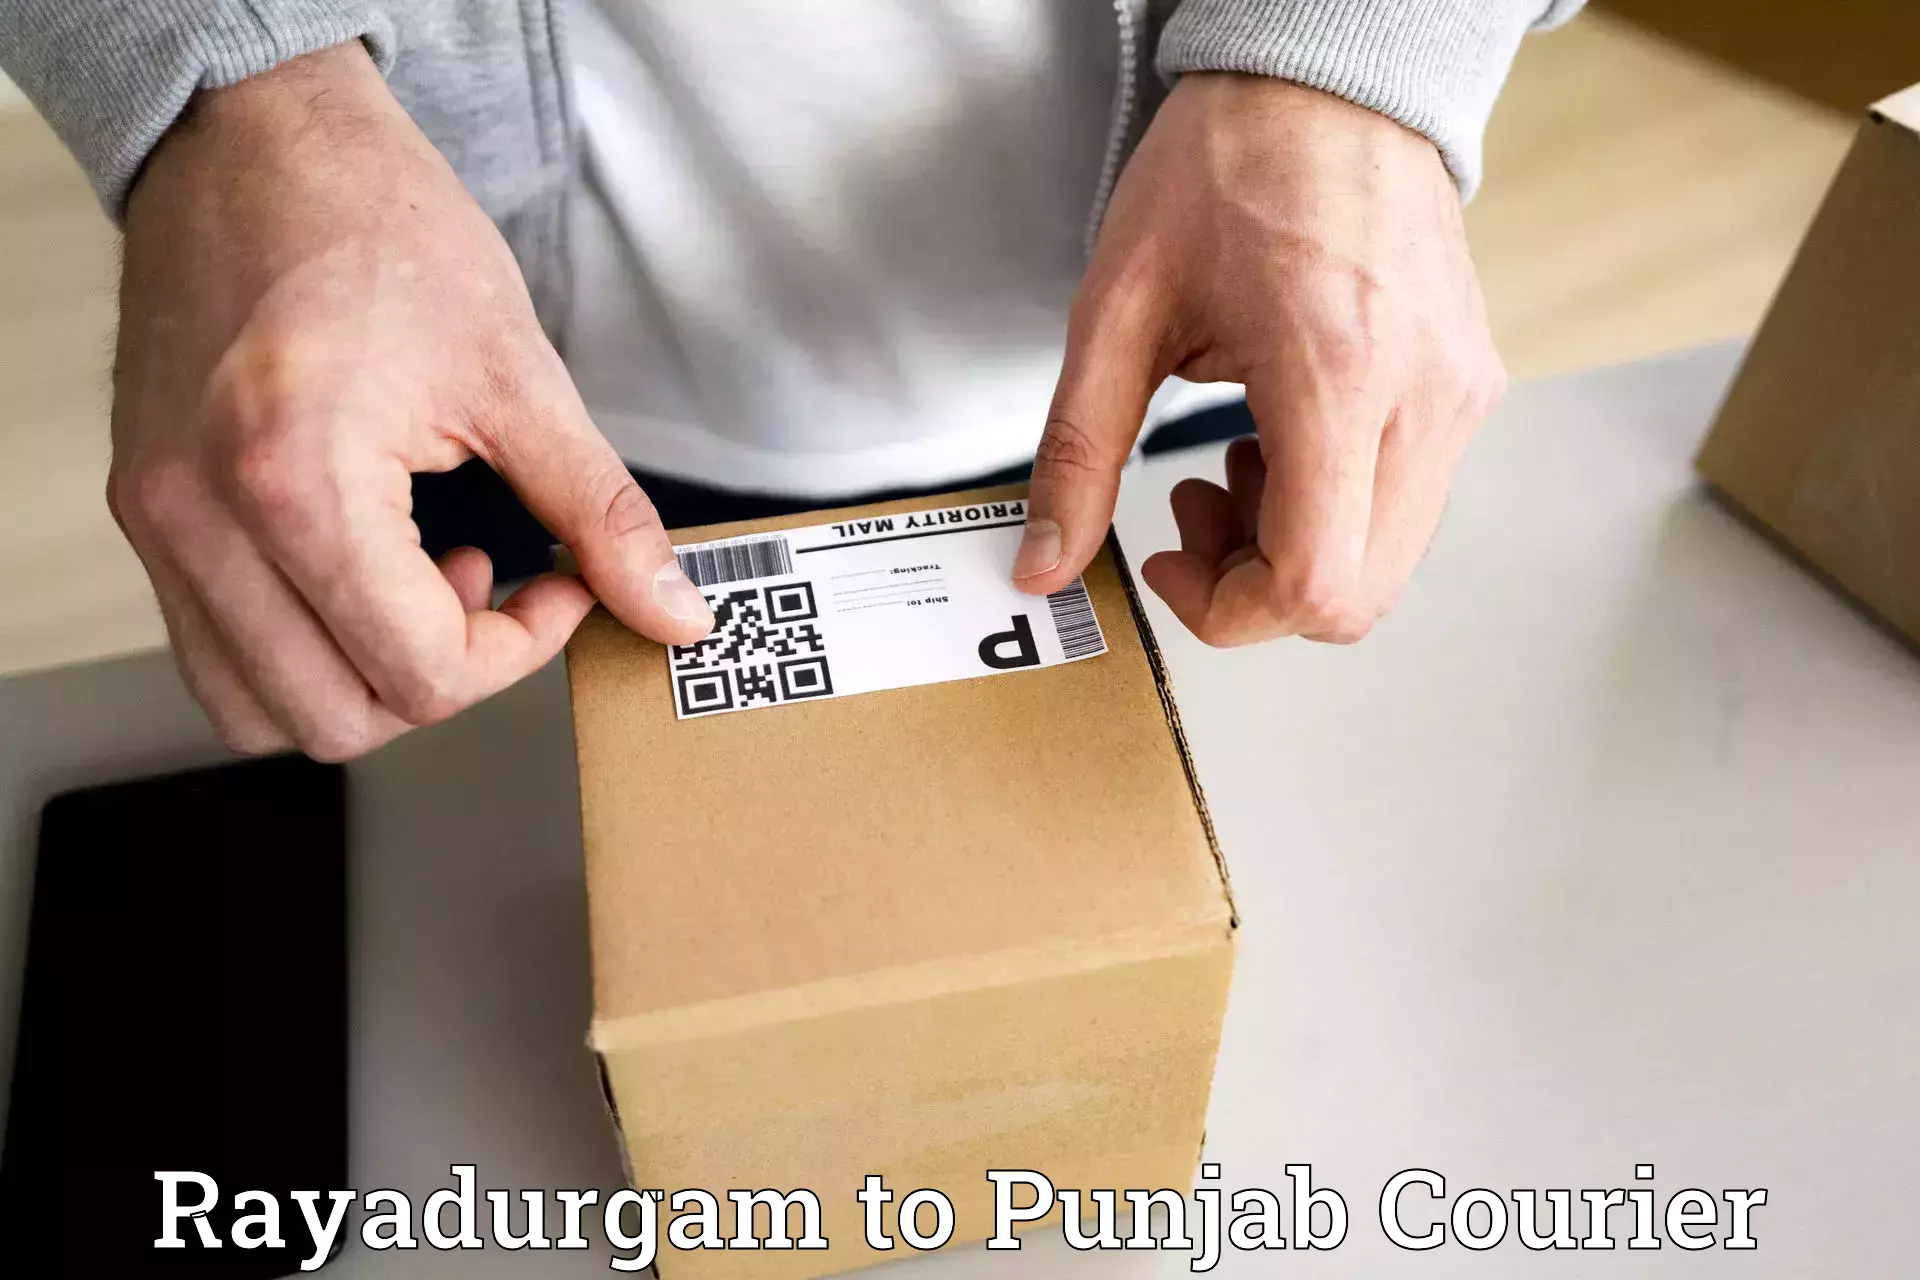 Express shipping in Rayadurgam to Punjab